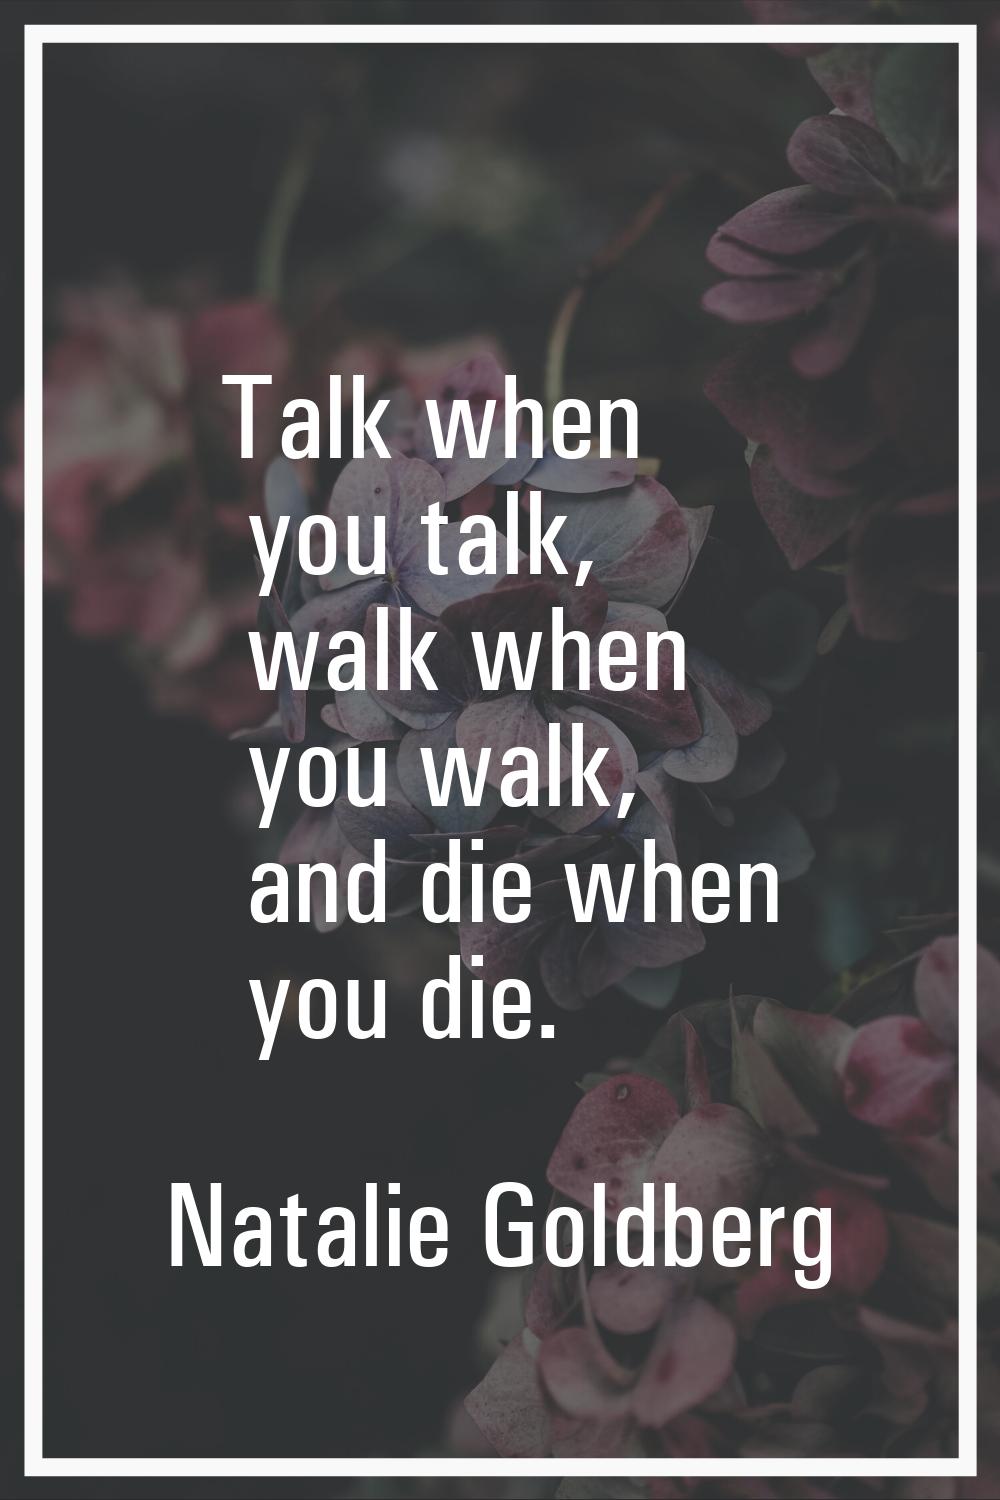 Talk when you talk, walk when you walk, and die when you die.